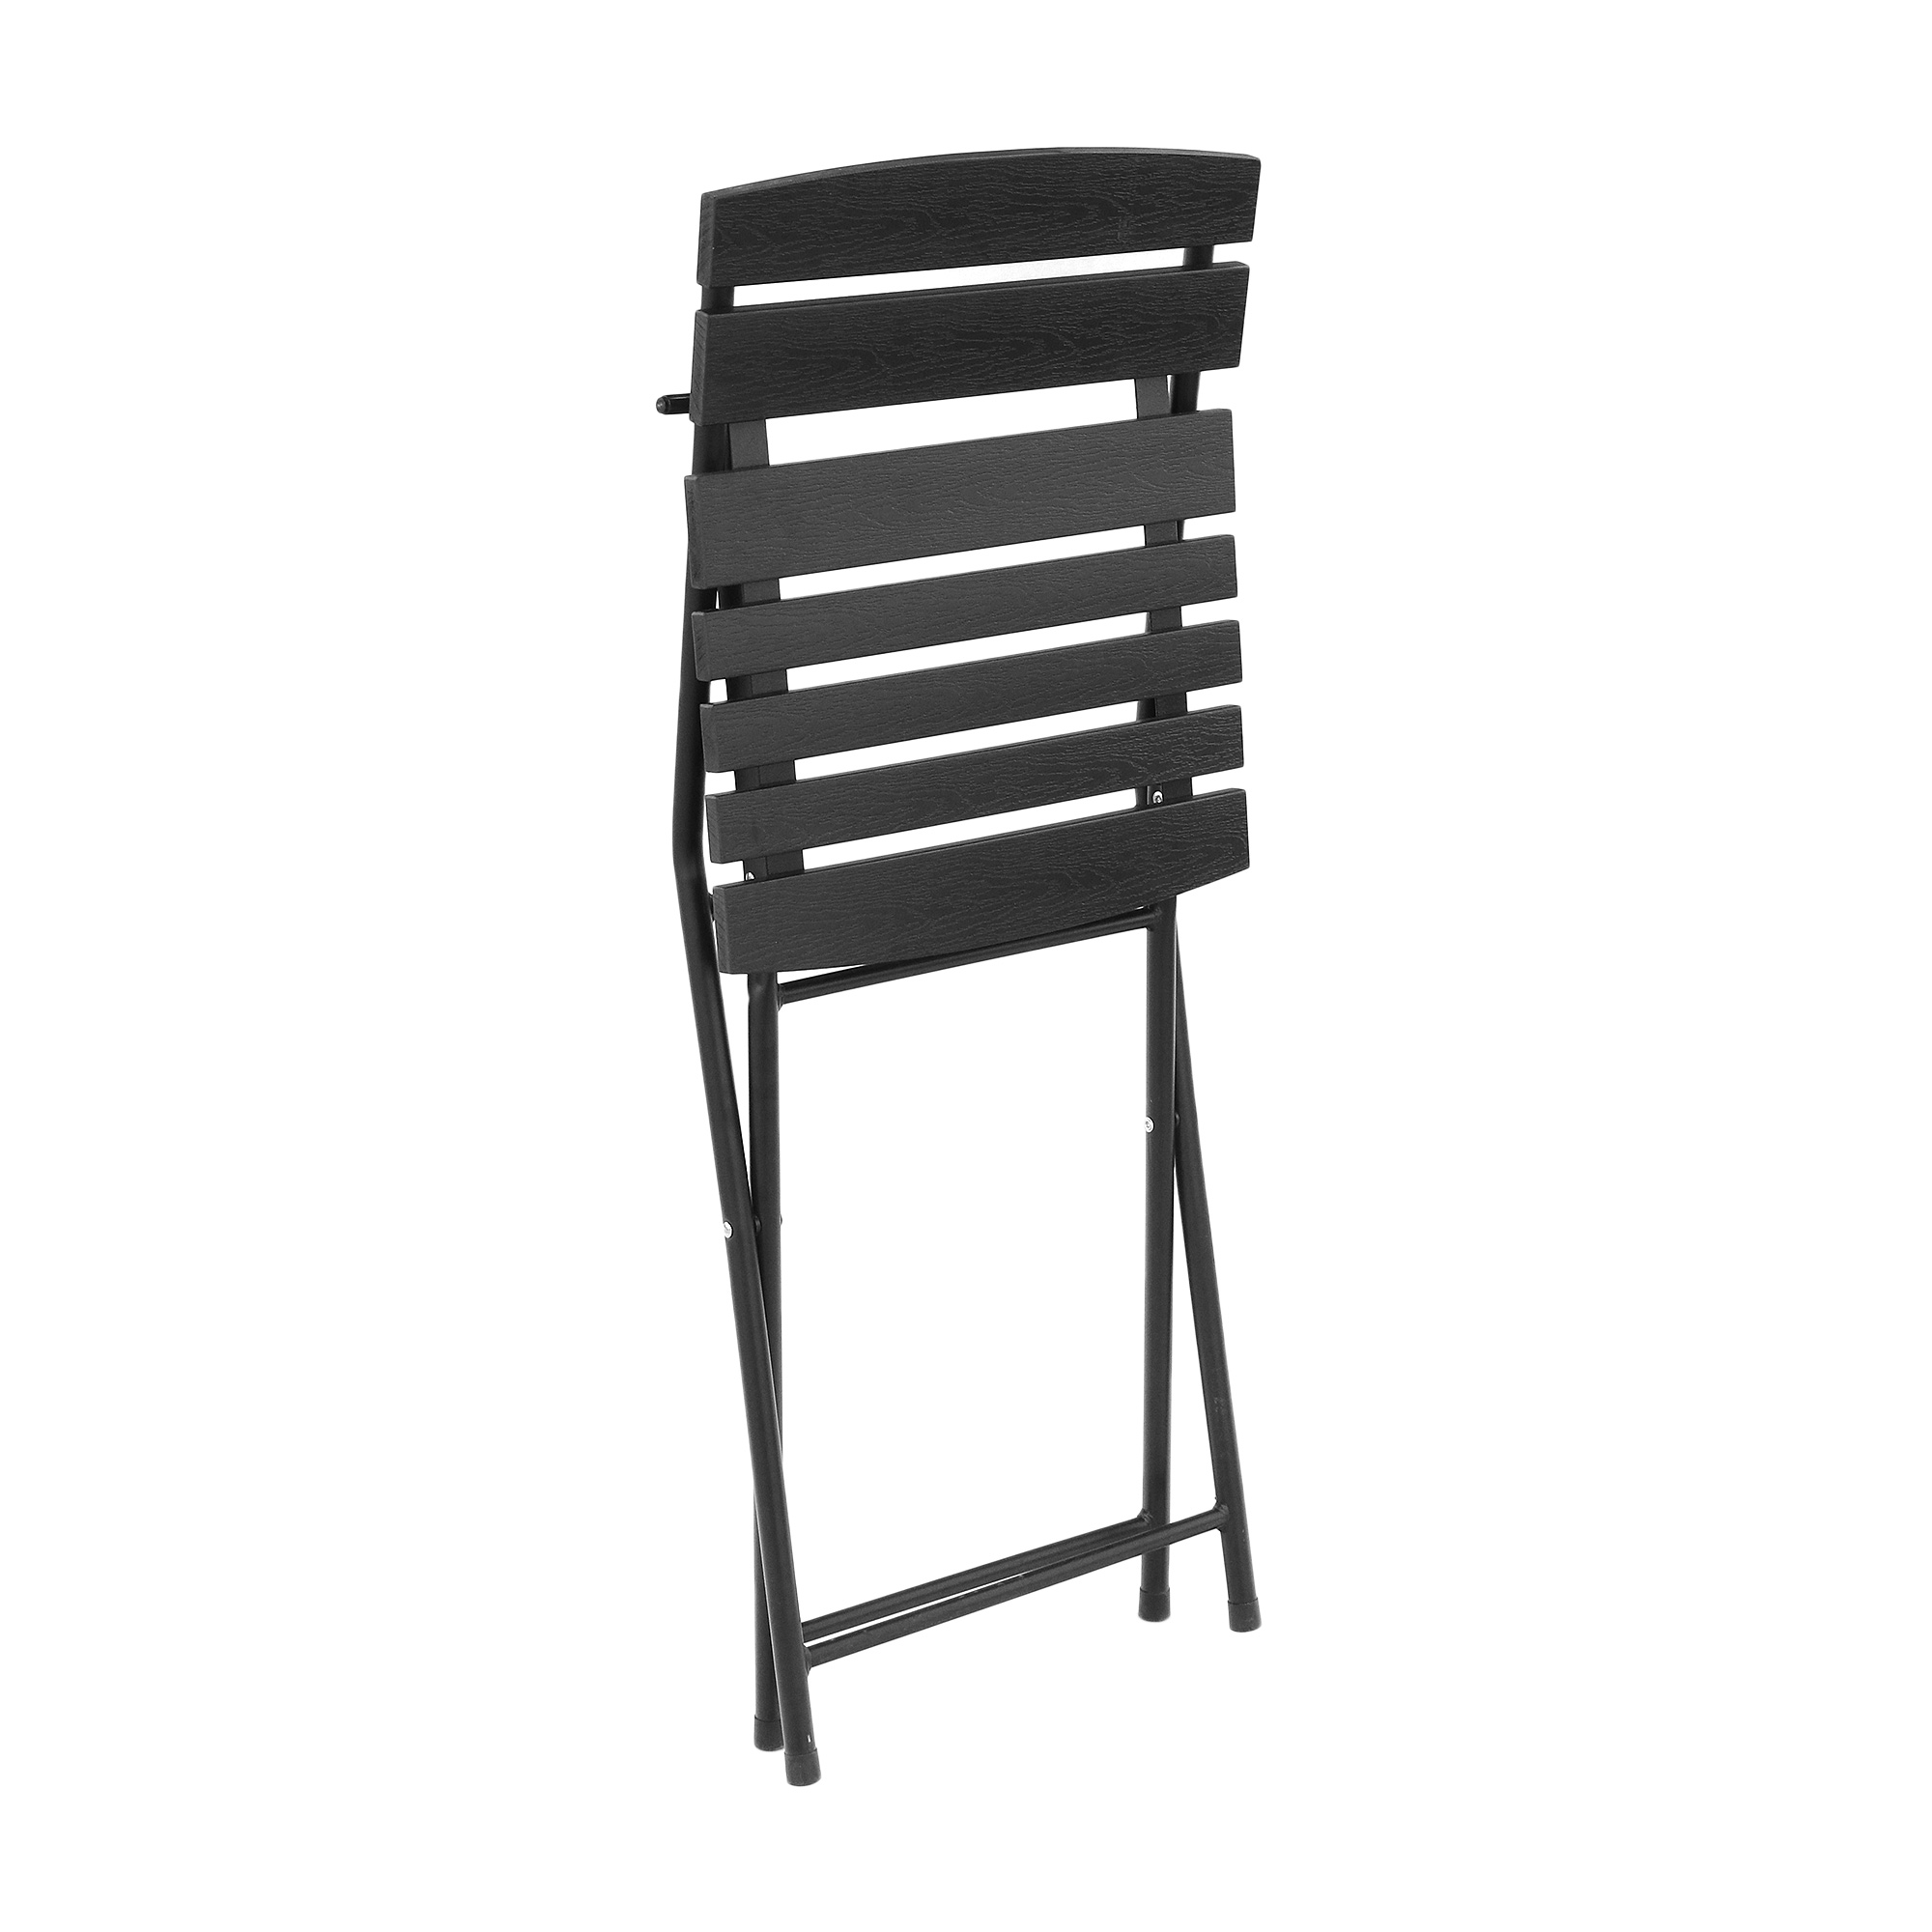 Набор садовой мебели Koopman furniture стол+2 стула, цвет черный, размер 60х60x70 см - фото 4